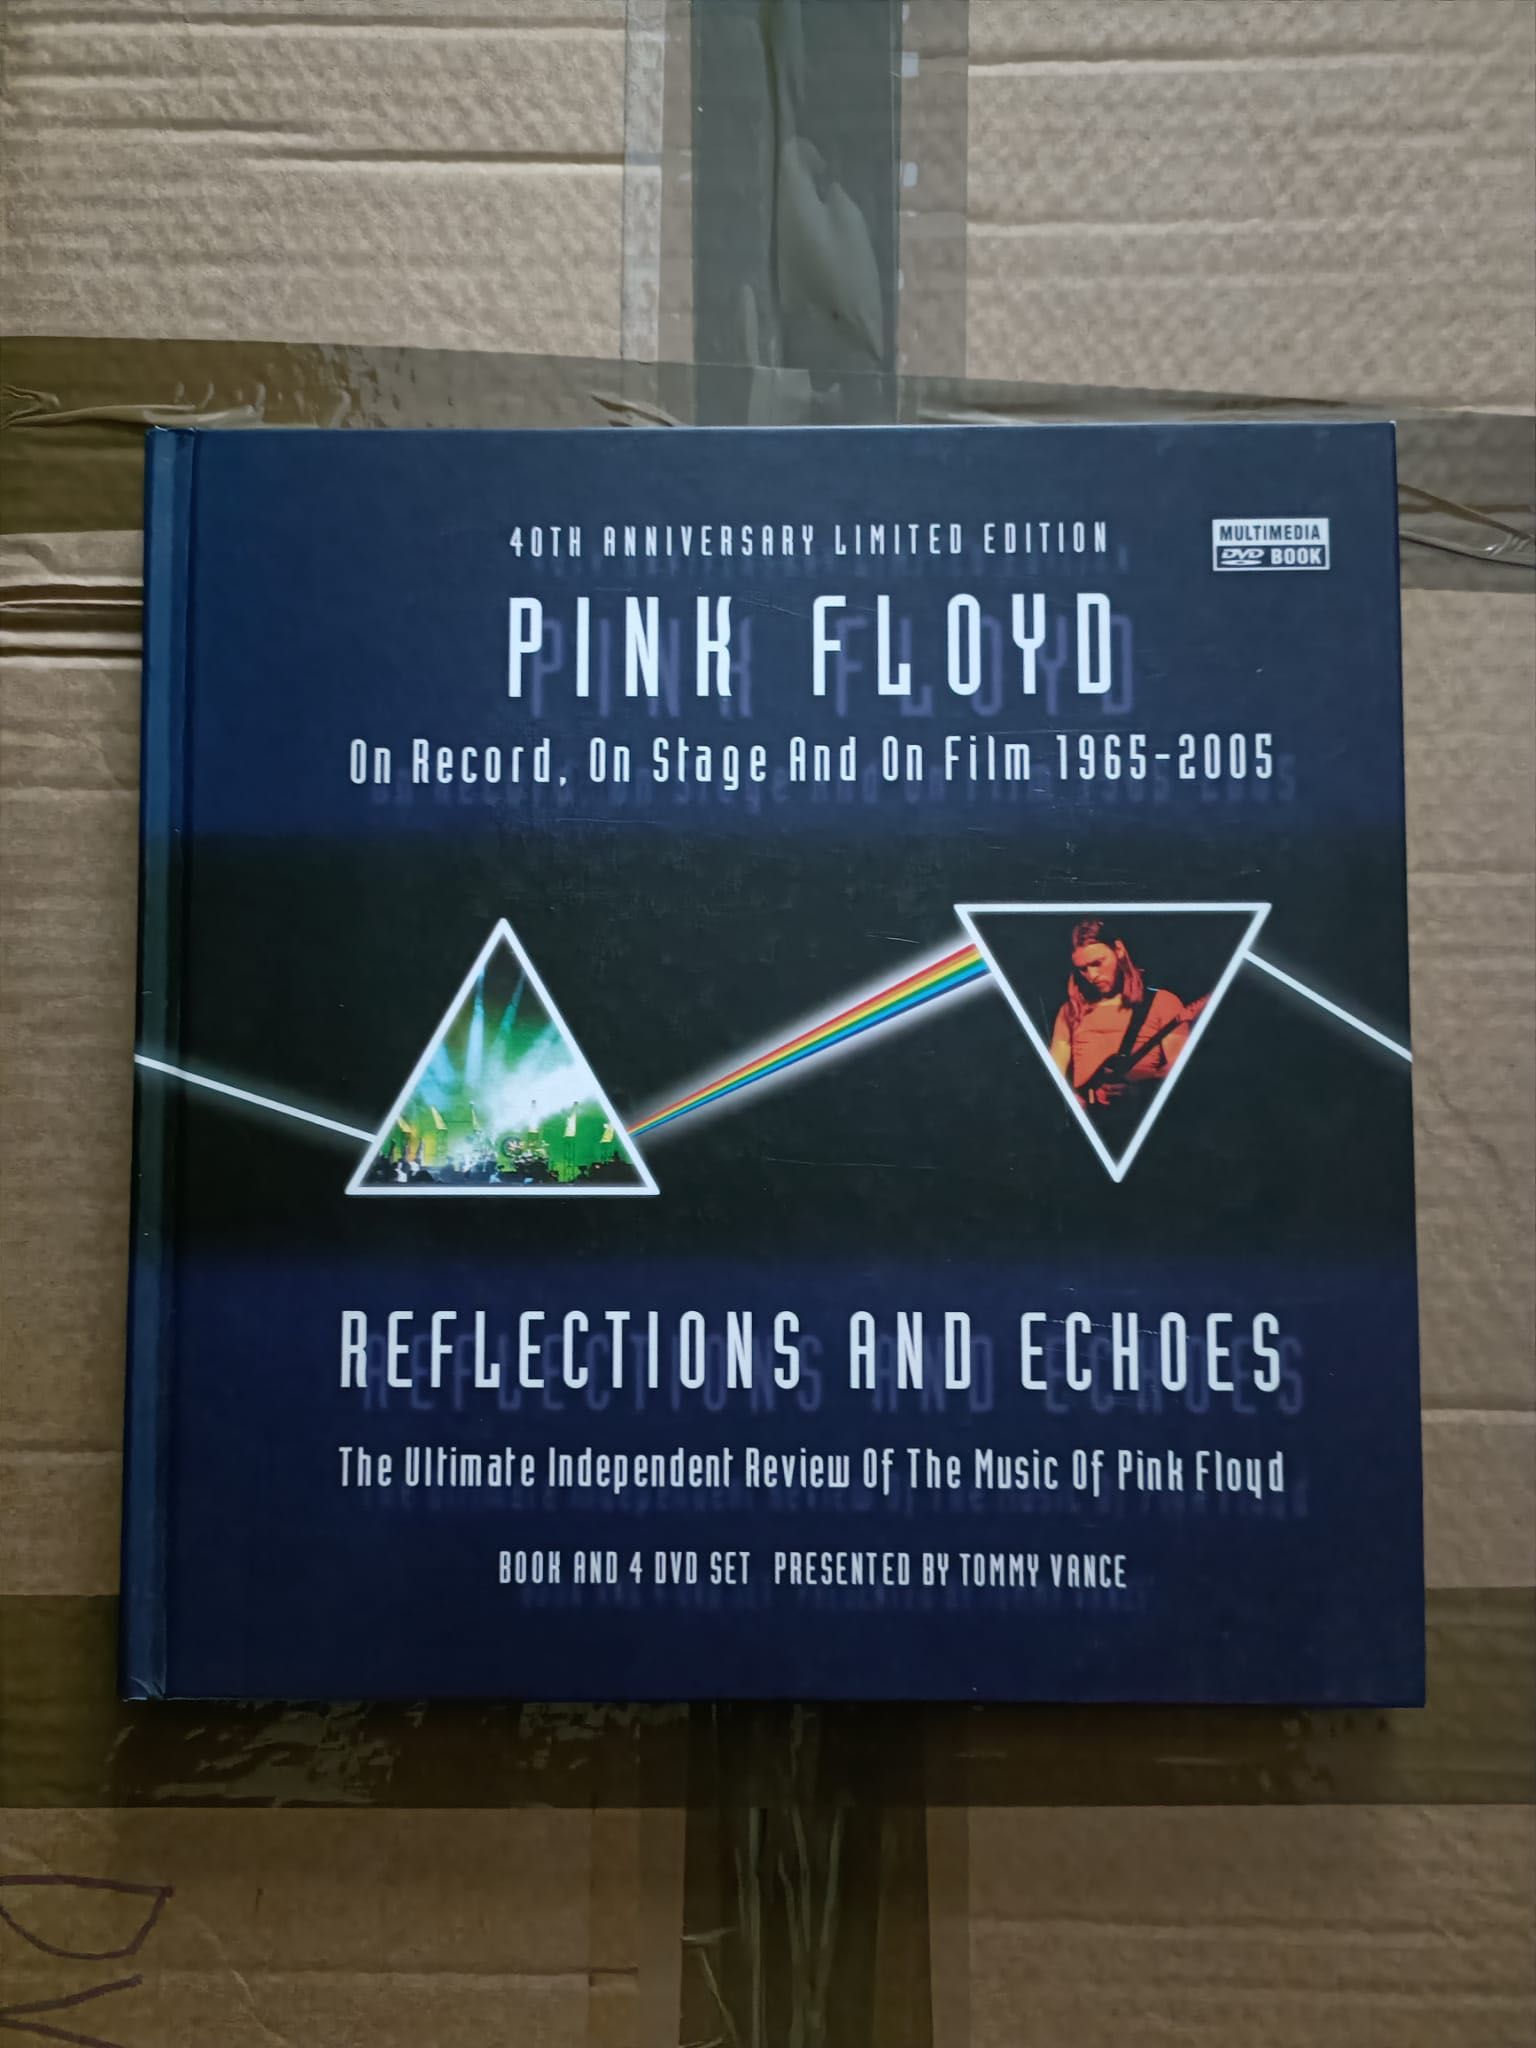 Colecção de 4 DVDs e livro com a história da banda Pink Floyd